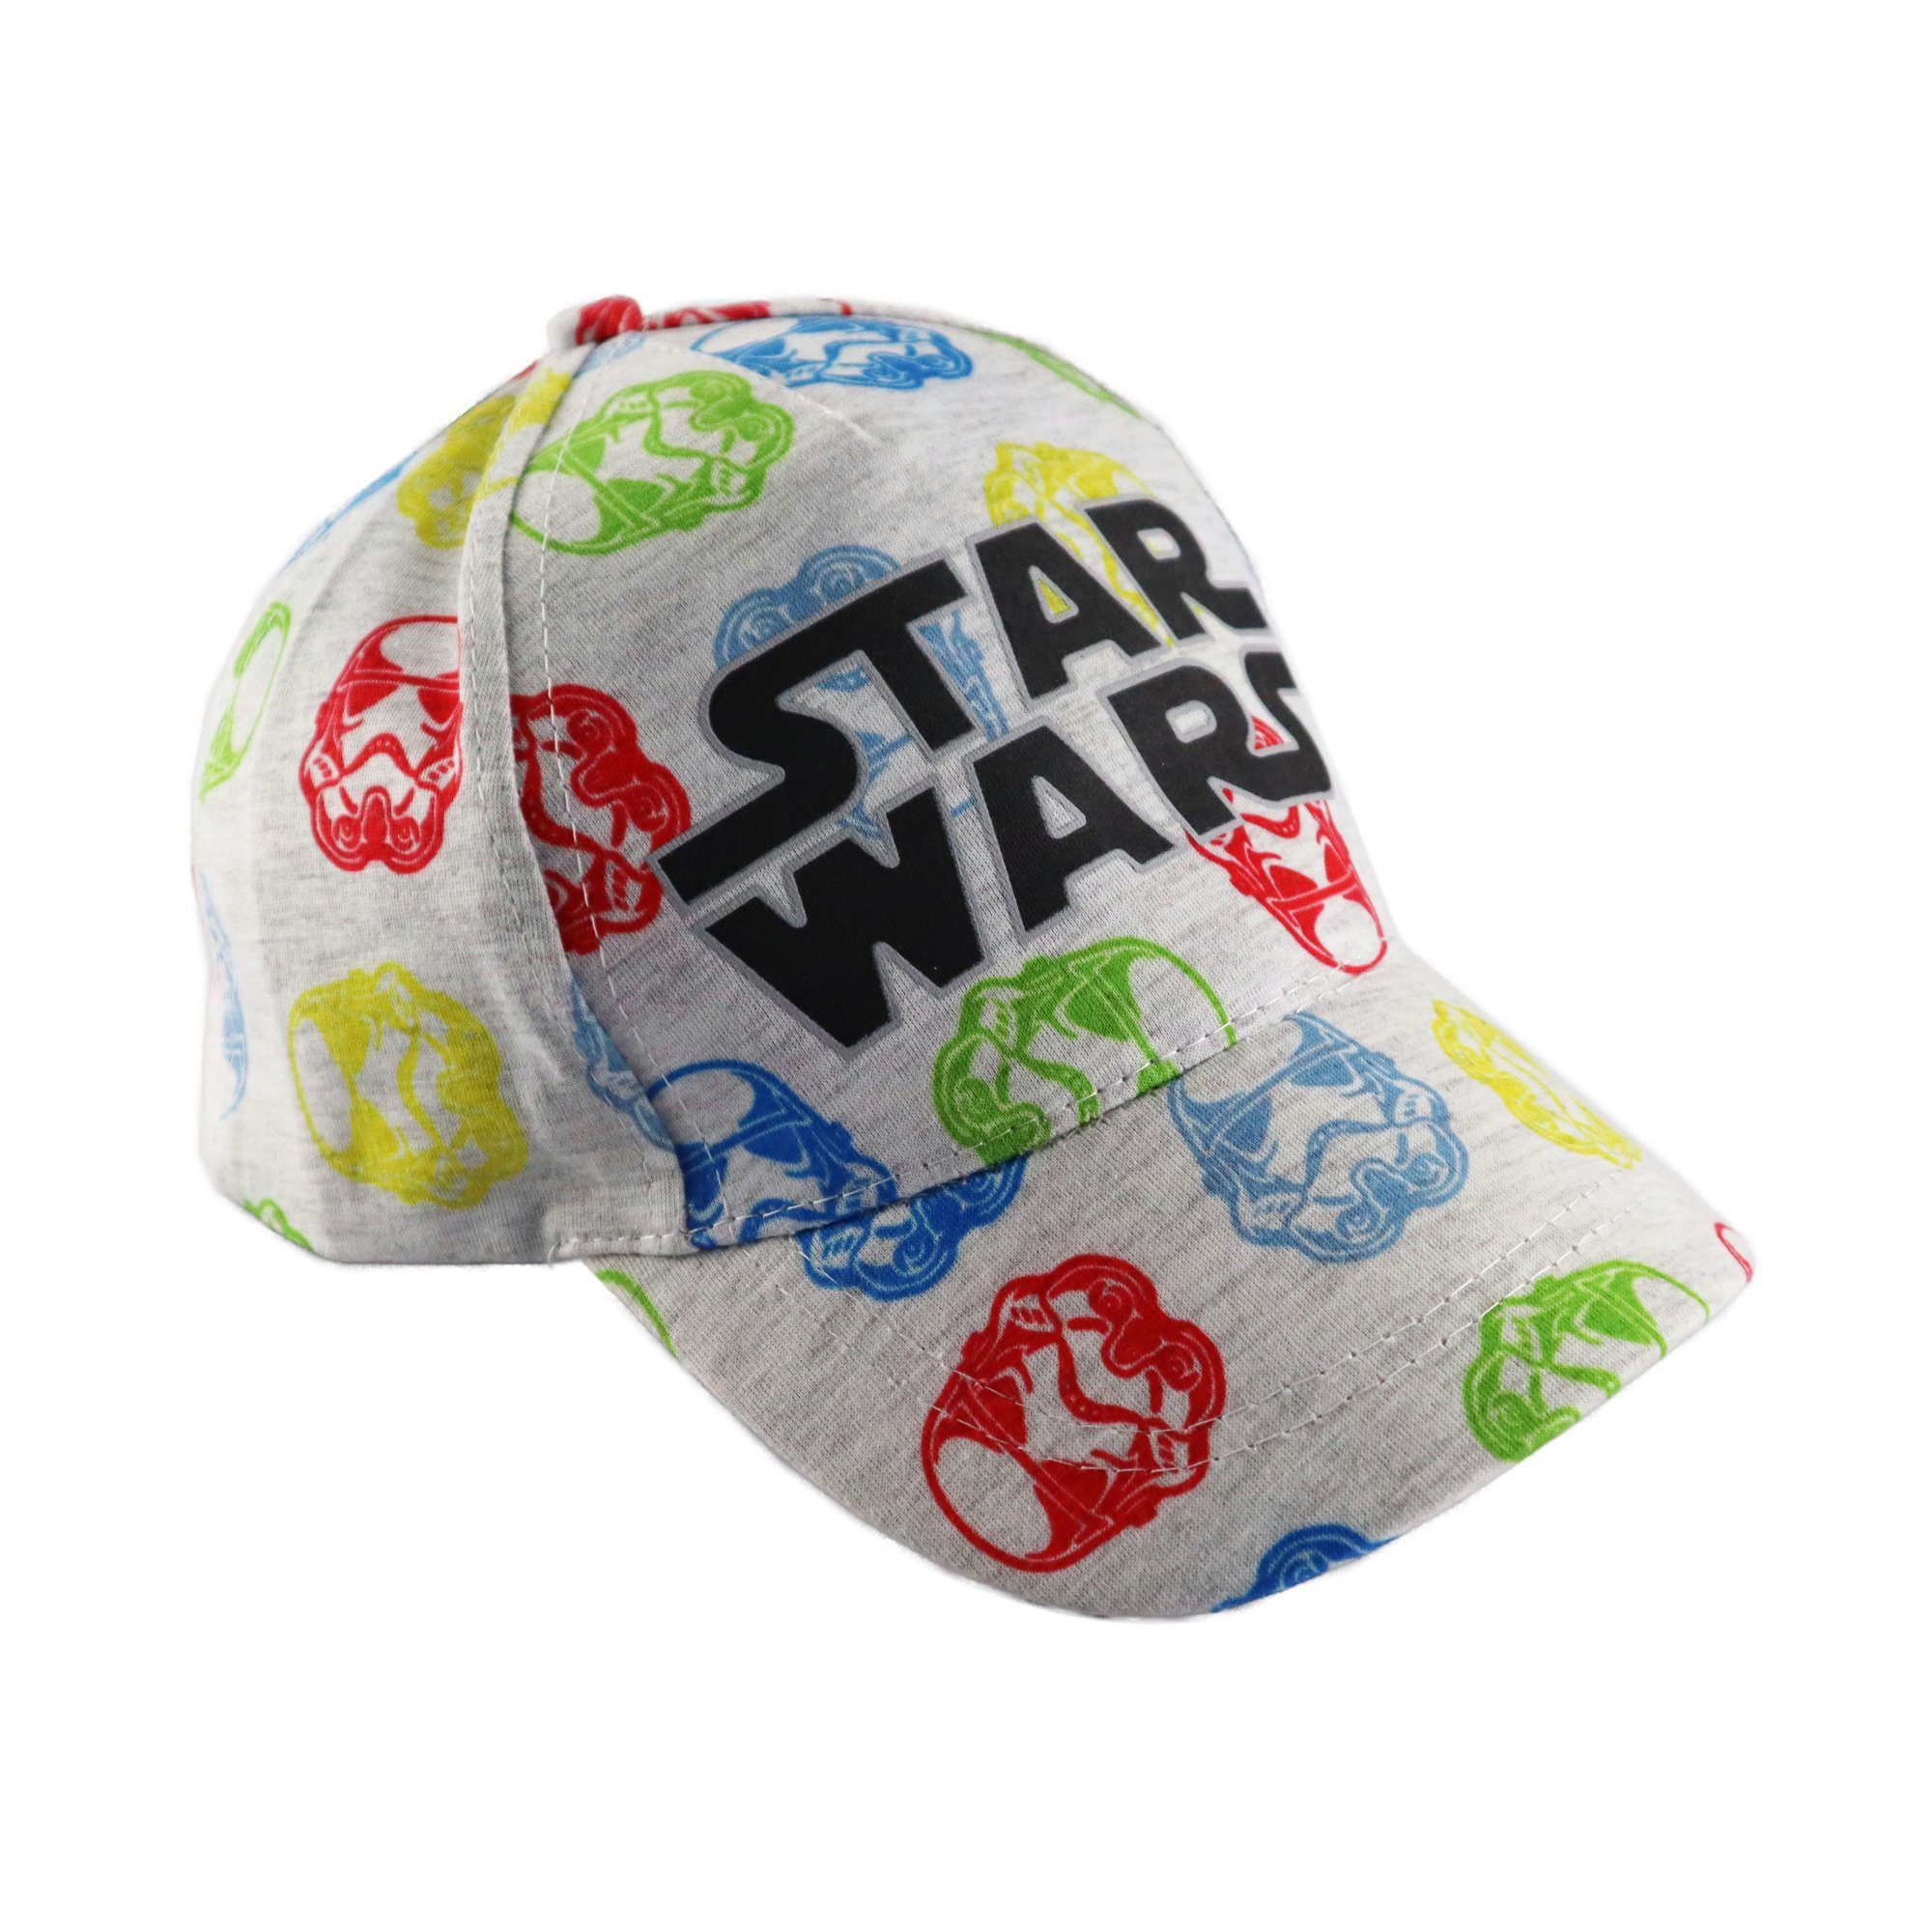 Wars Baseball Disney Cap Gr. Star Baseball 54 - Basecap Kappe Trooper Kinder 52 Storm Star Wars bis